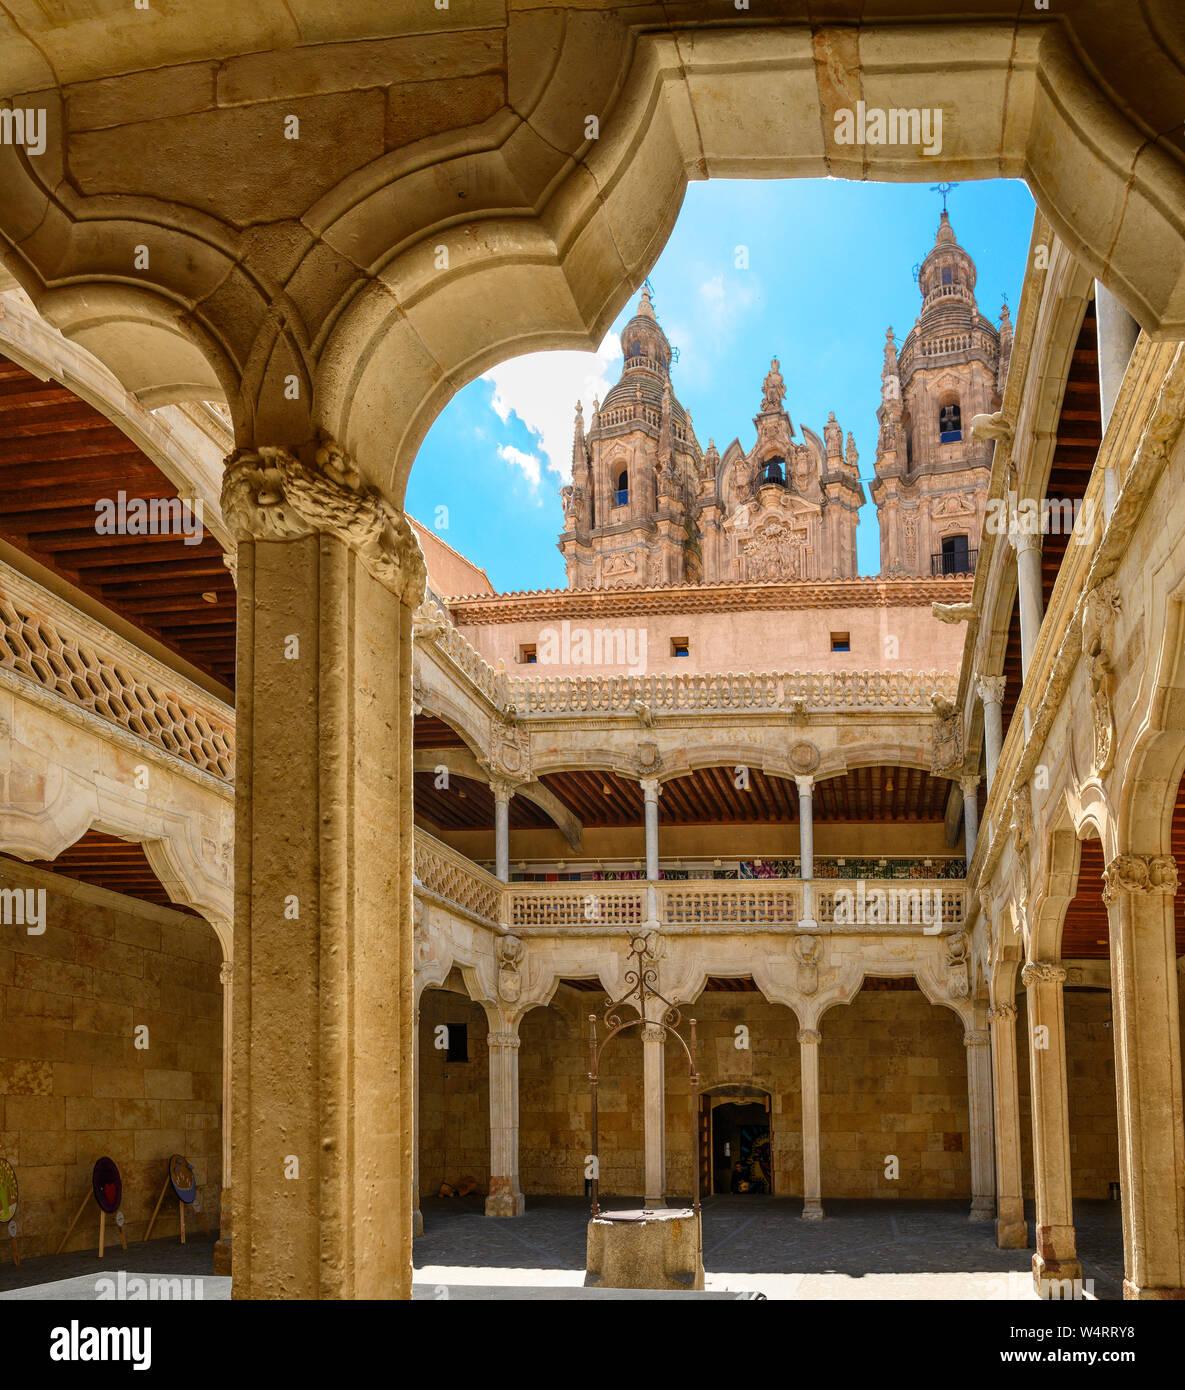 La cour intérieure du 16ème siècle, Casa de las Conchas, avec la cathédrale en arrière-plan, Salamanca, Espagne. Banque D'Images